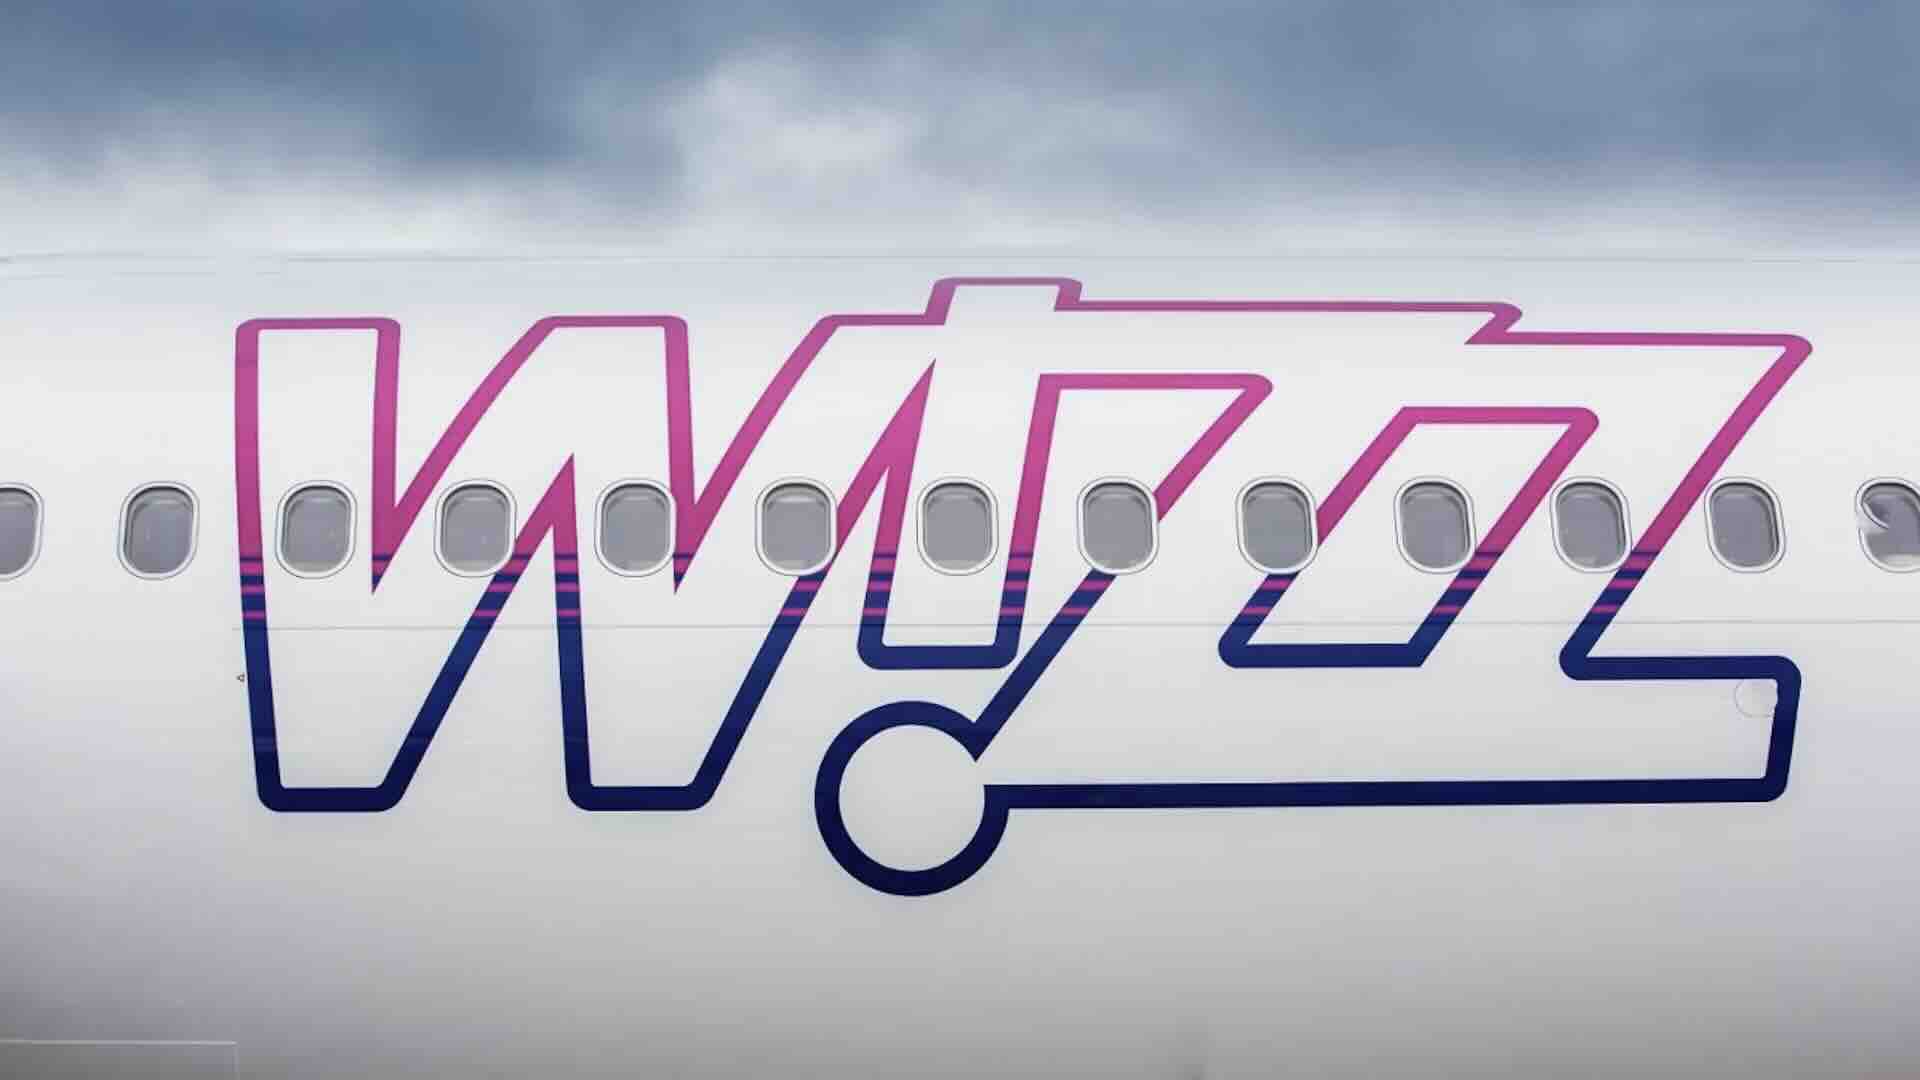 Wizz Air promo vinci un premio da 20.000 euro